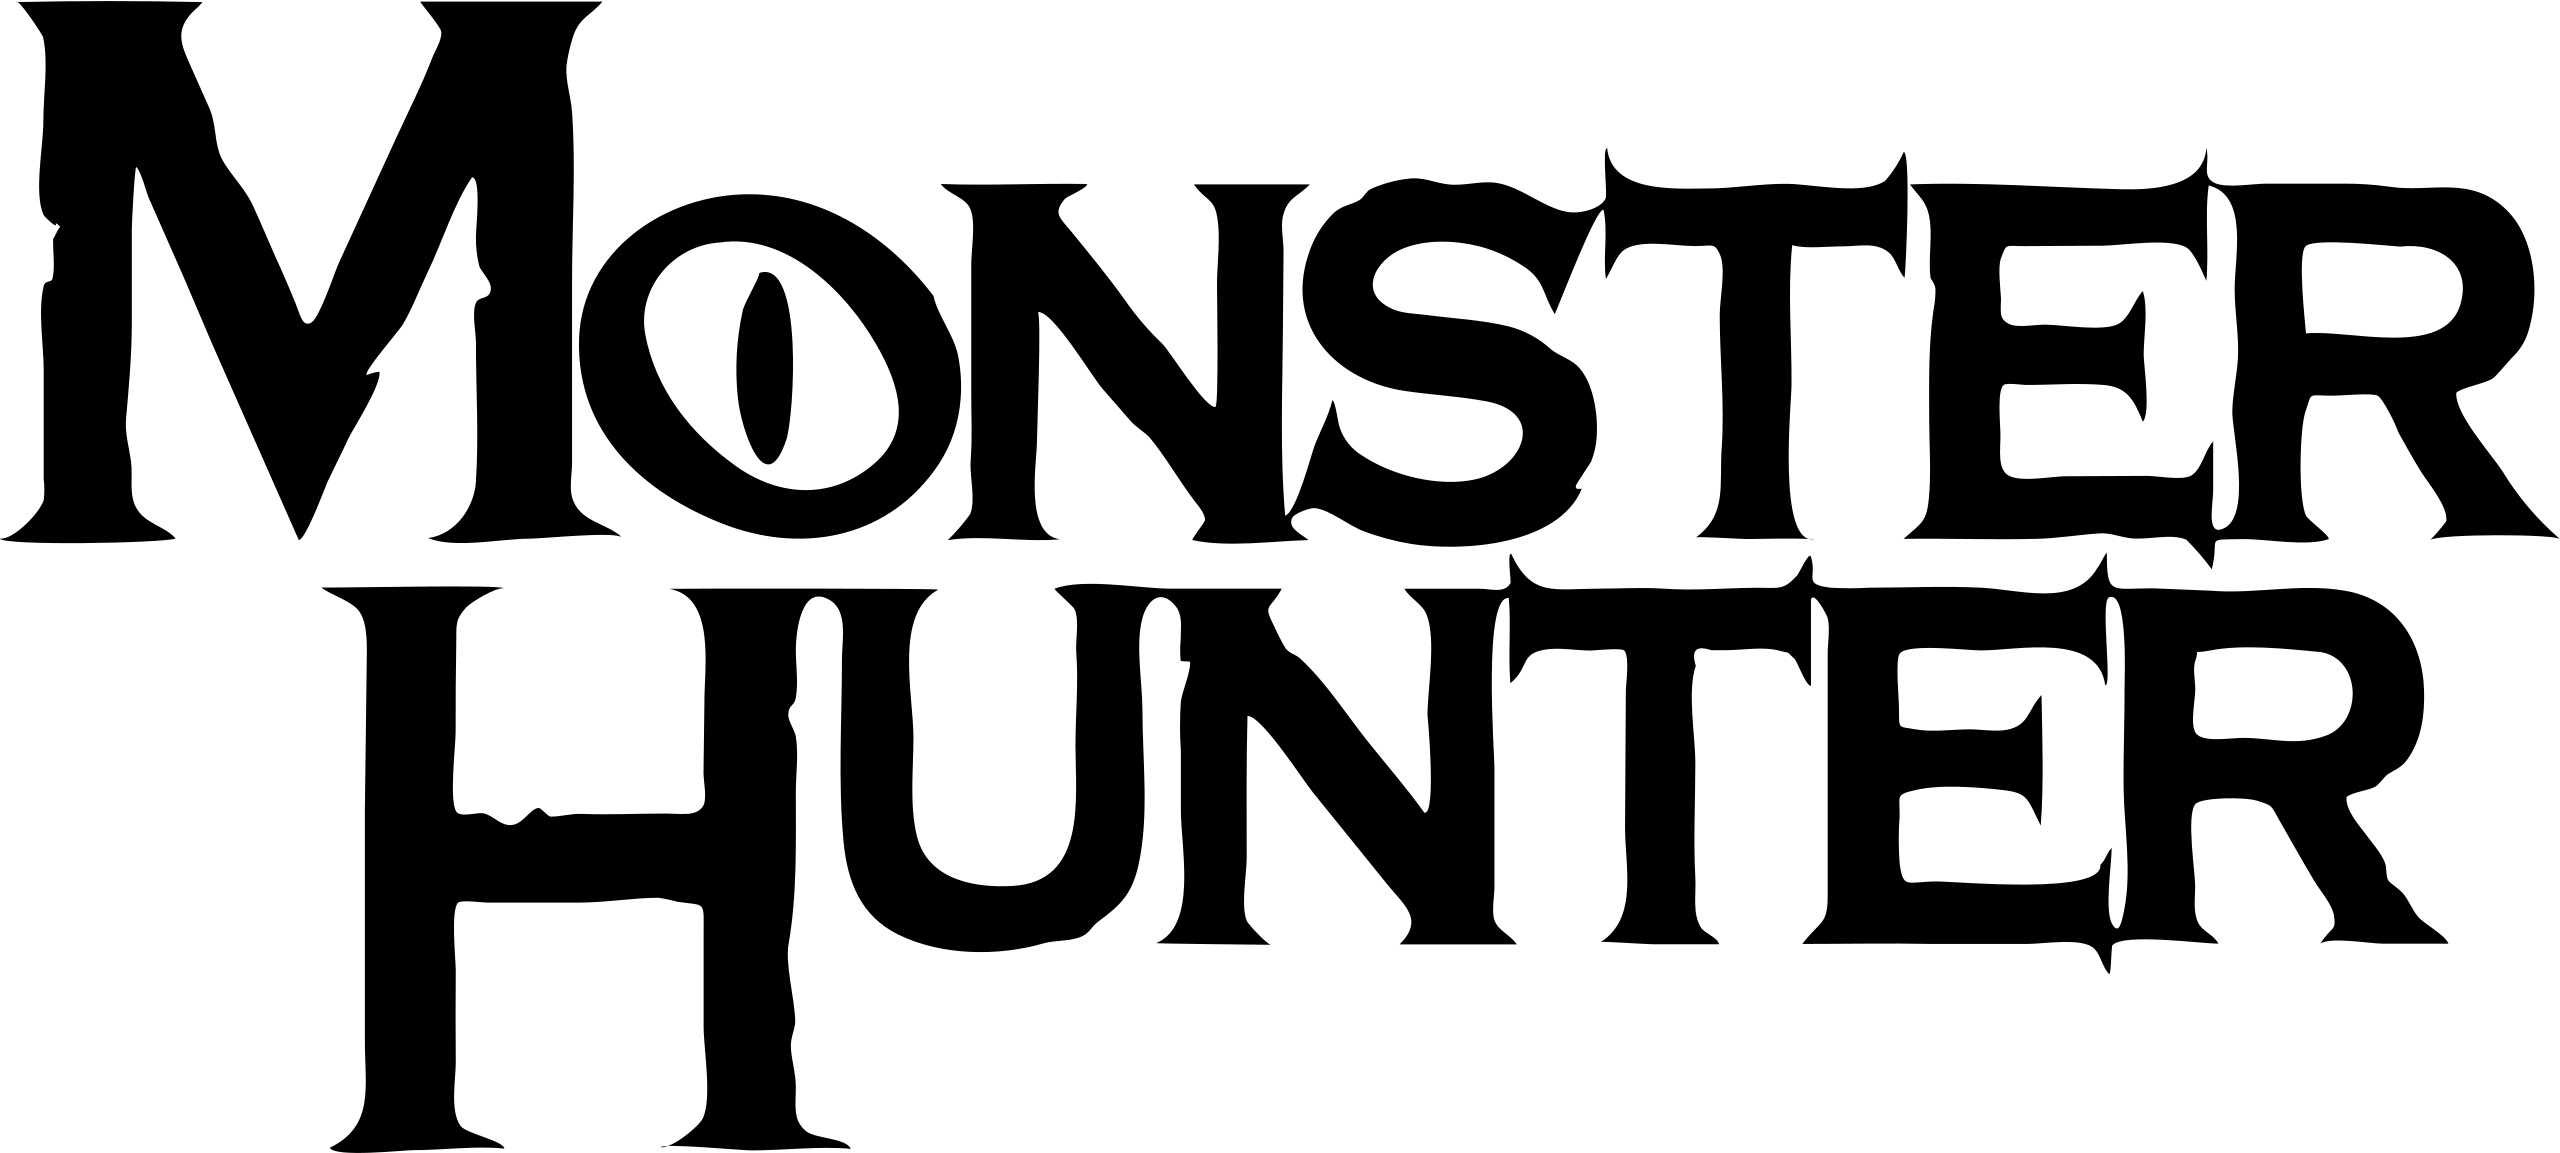 File:Monster Hunter logo black.svg - Wikimedia Commons